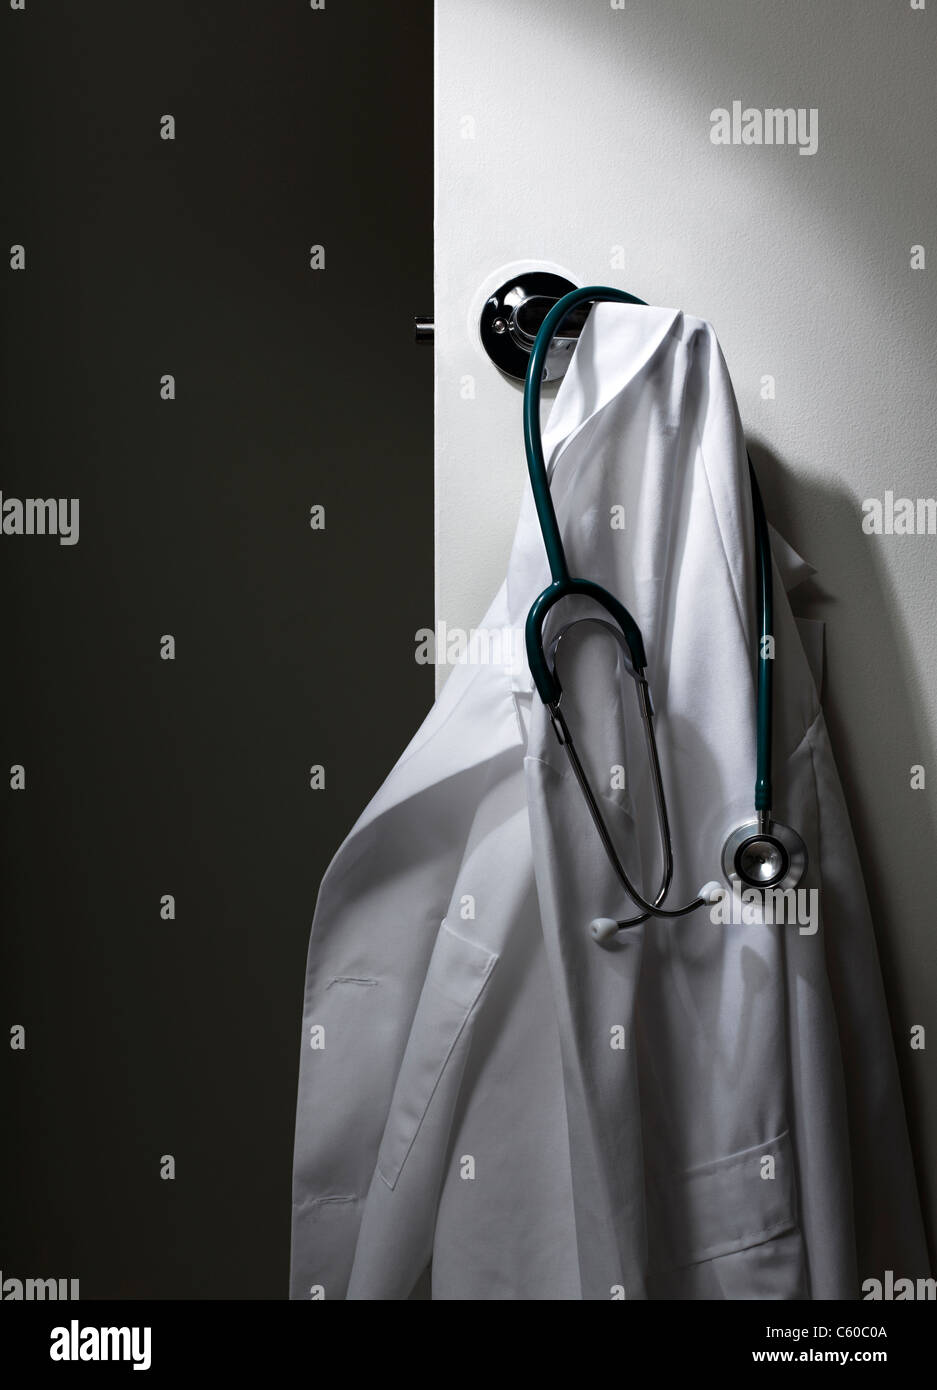 Doctors Lab Coat hanging on door Stock Photo